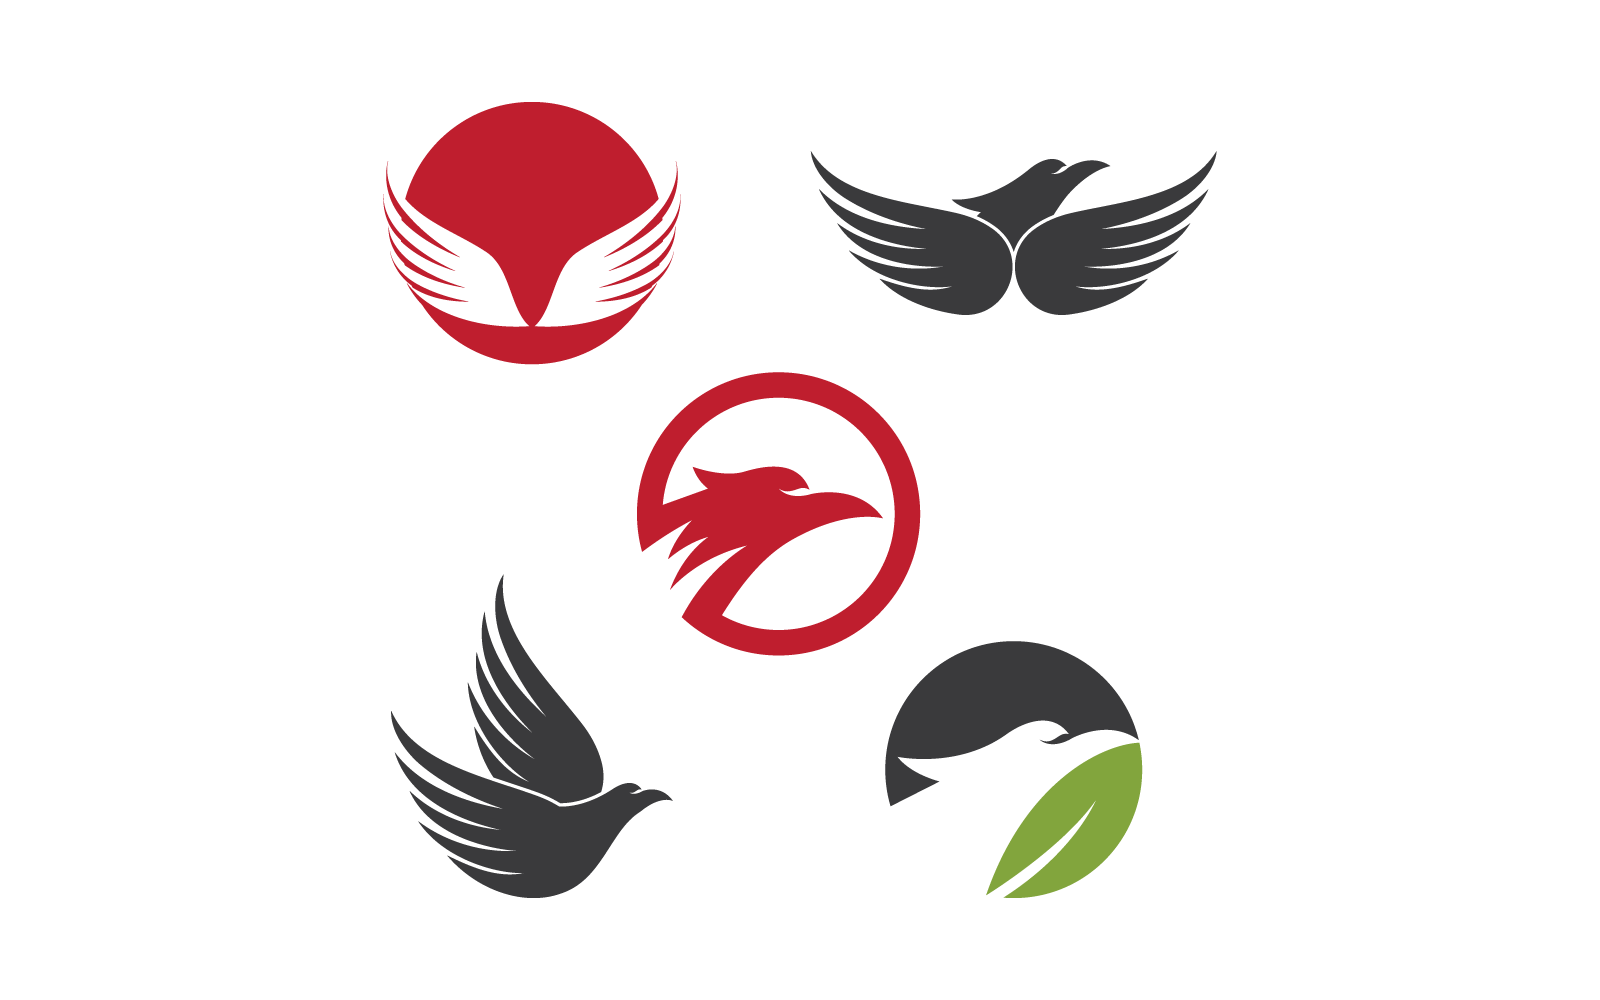 Дизайн логотипа векторной иллюстрации соколиного орла